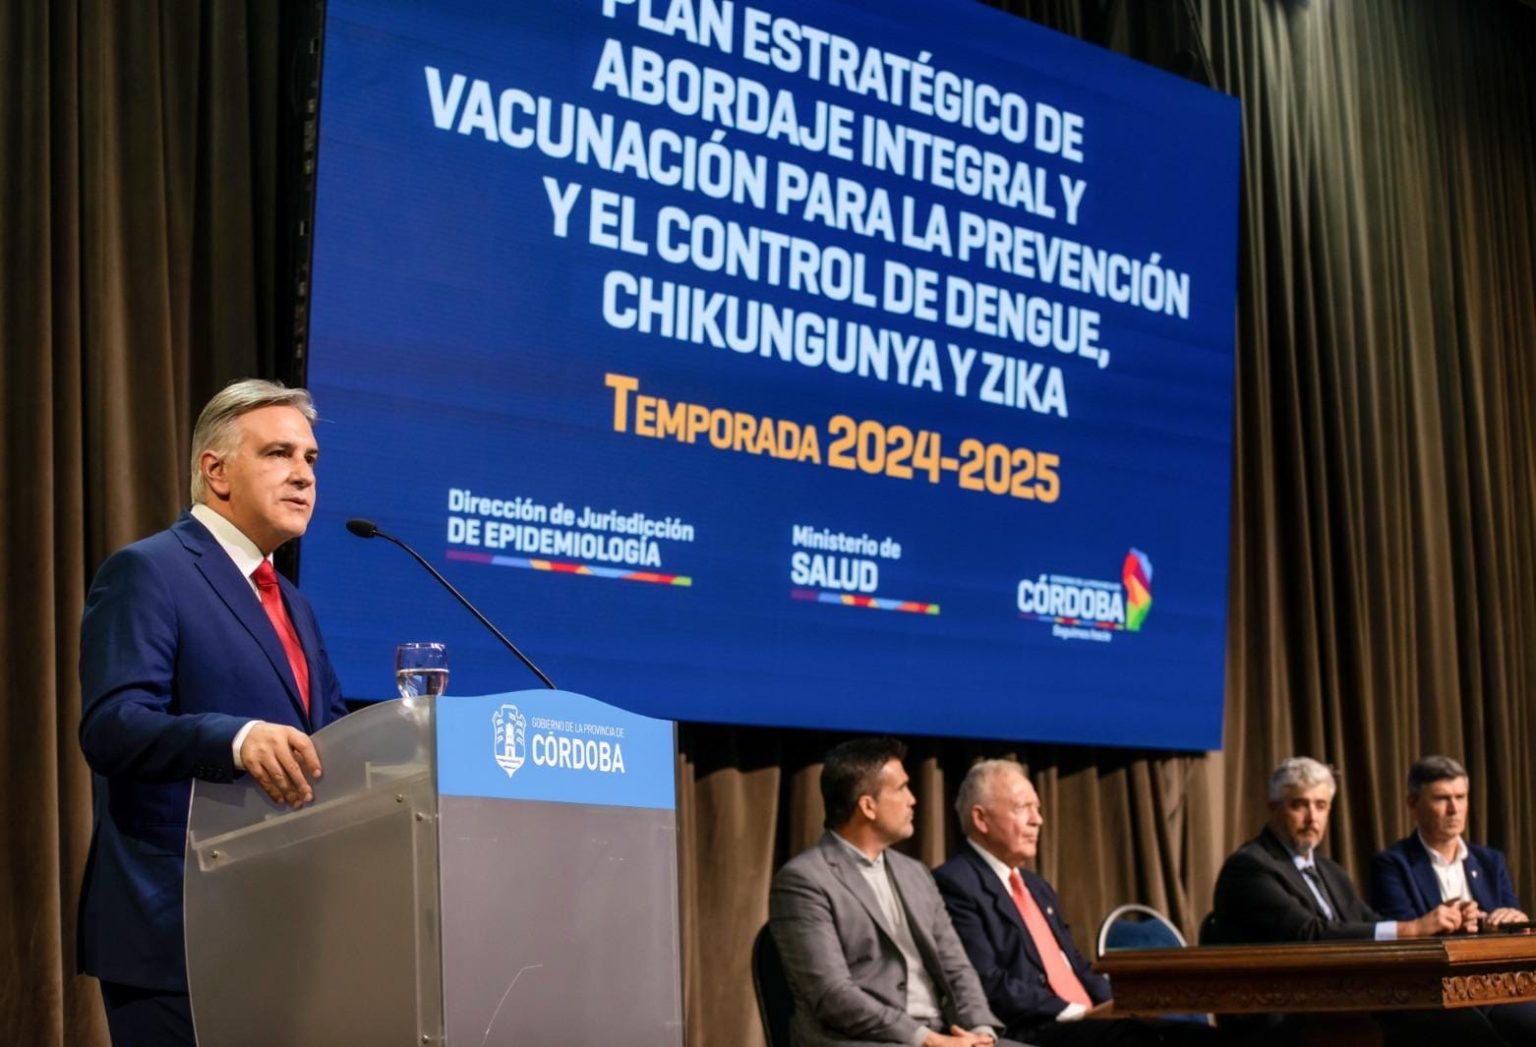 La Provincia lanzó el Plan Estratégico de Vacunación contra el Dengue